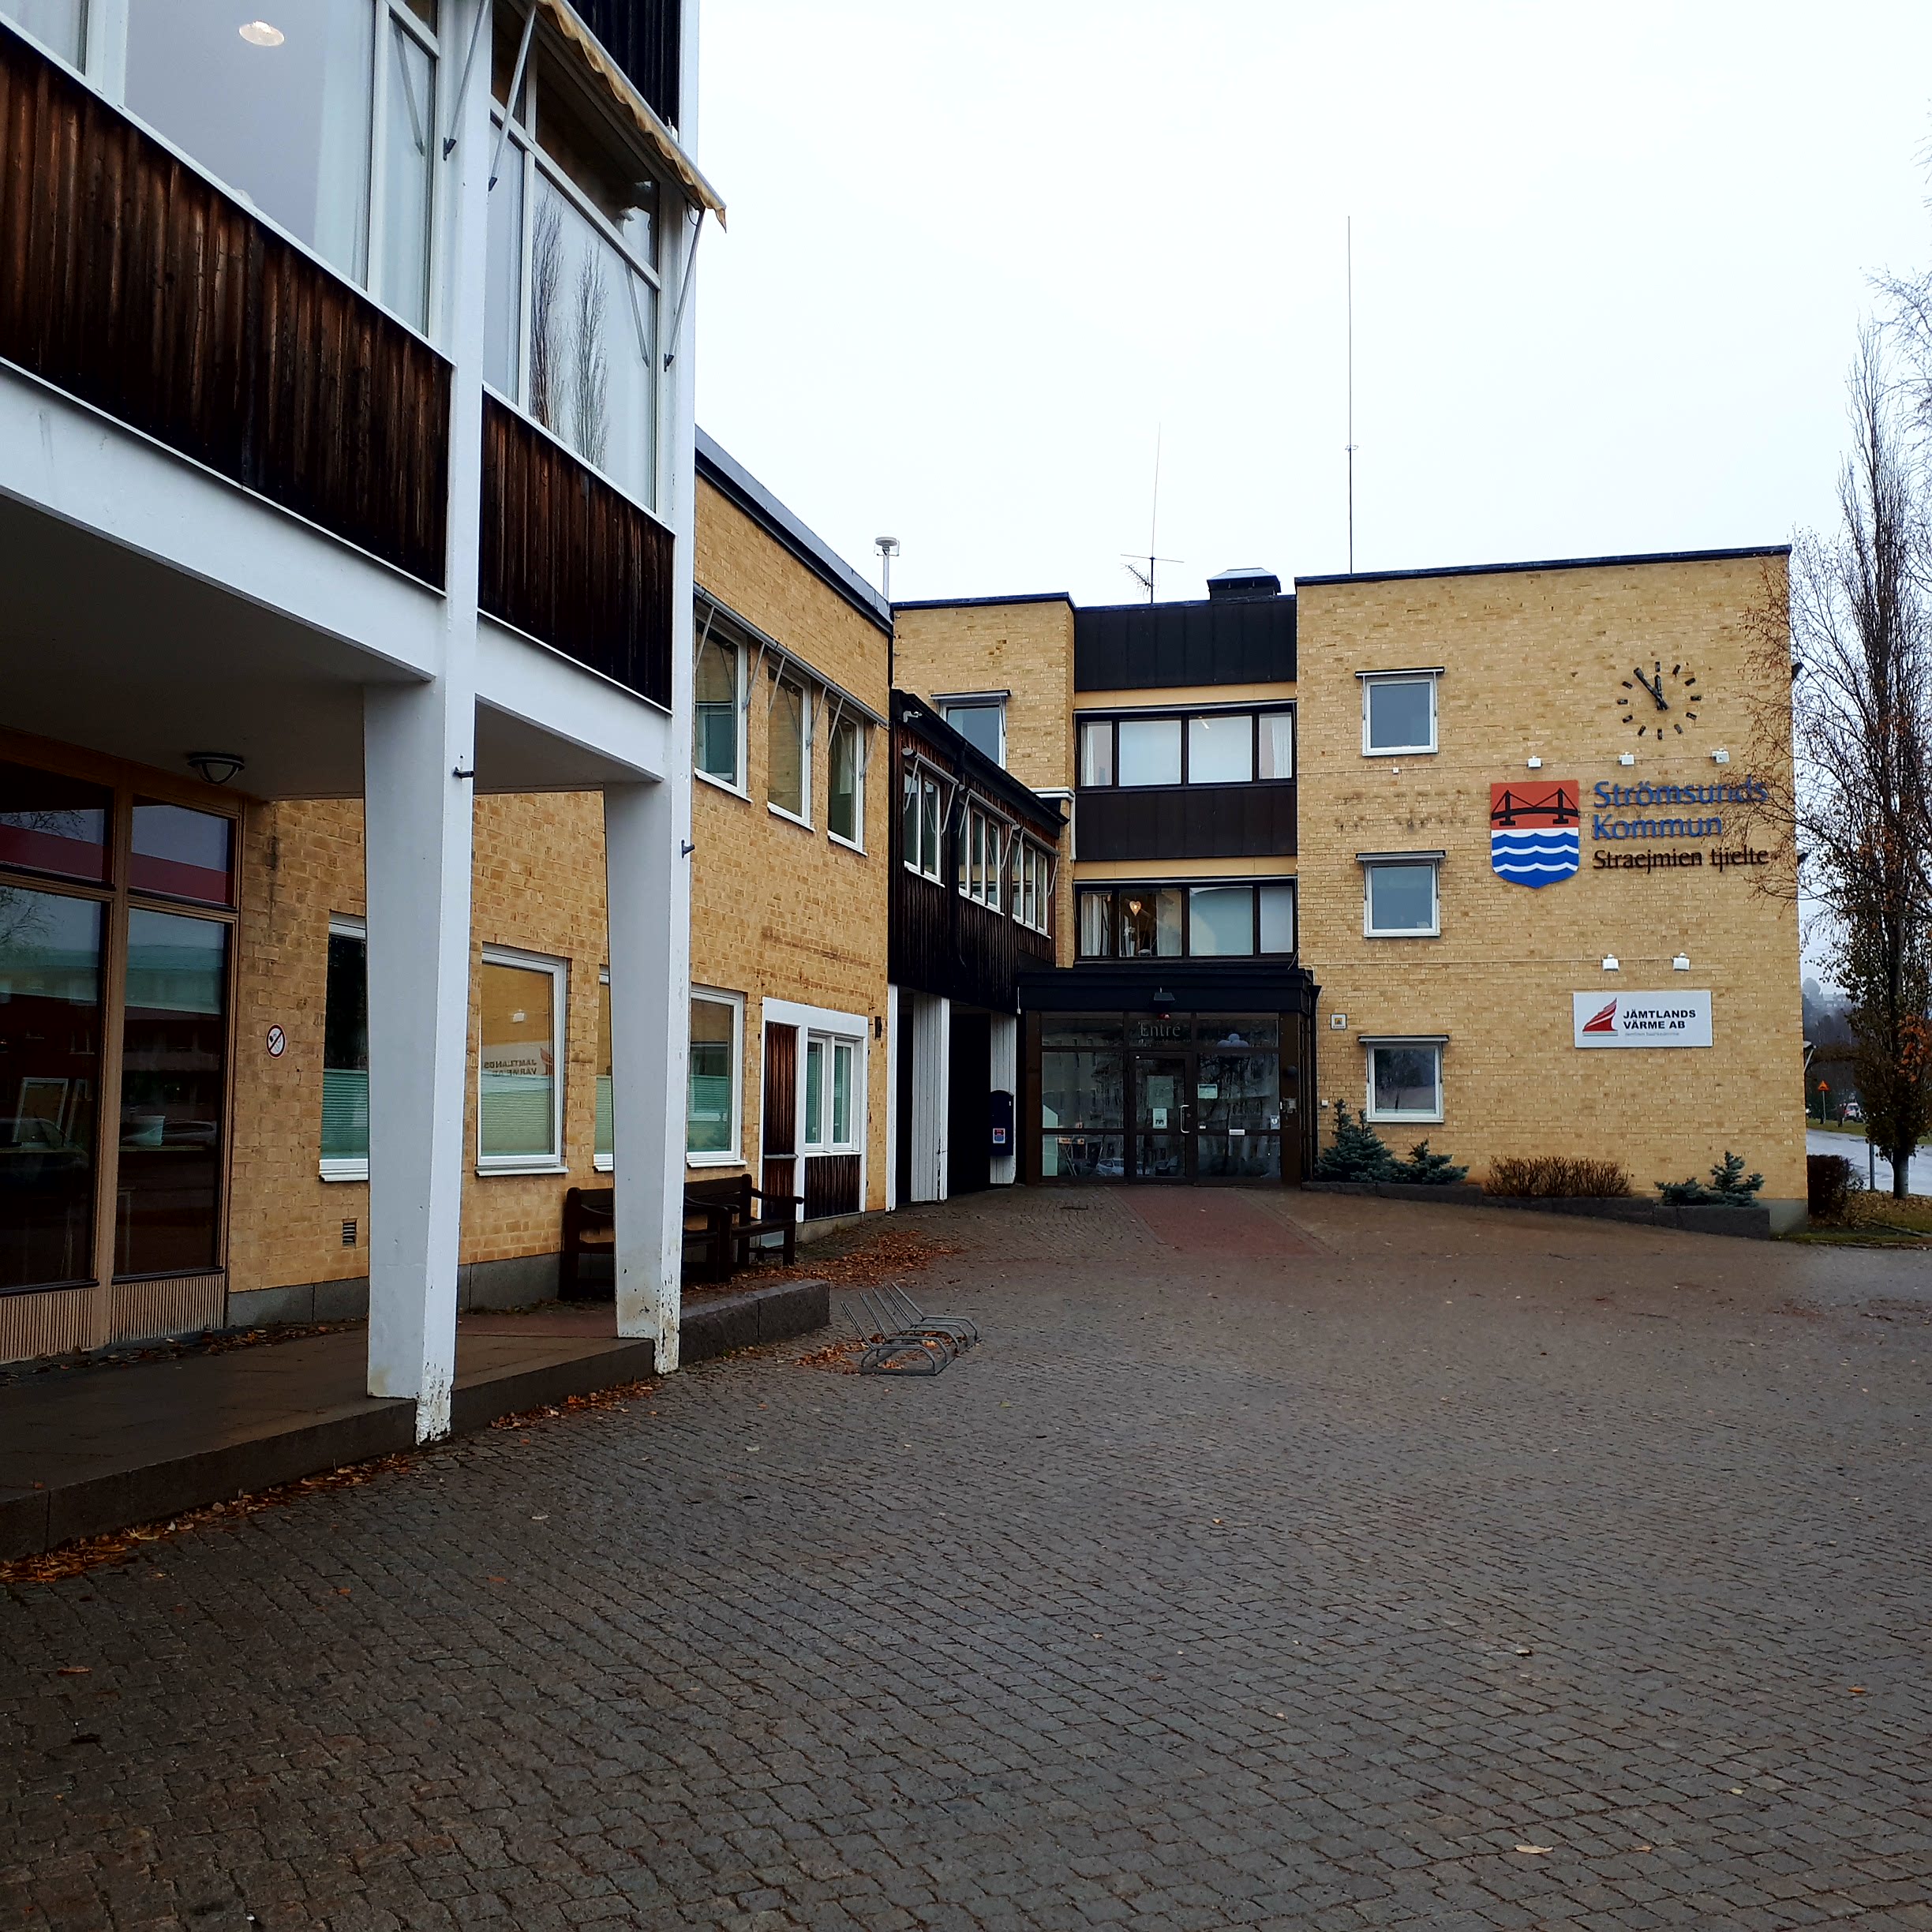 Municipality of Strömsund fined 1.5 million